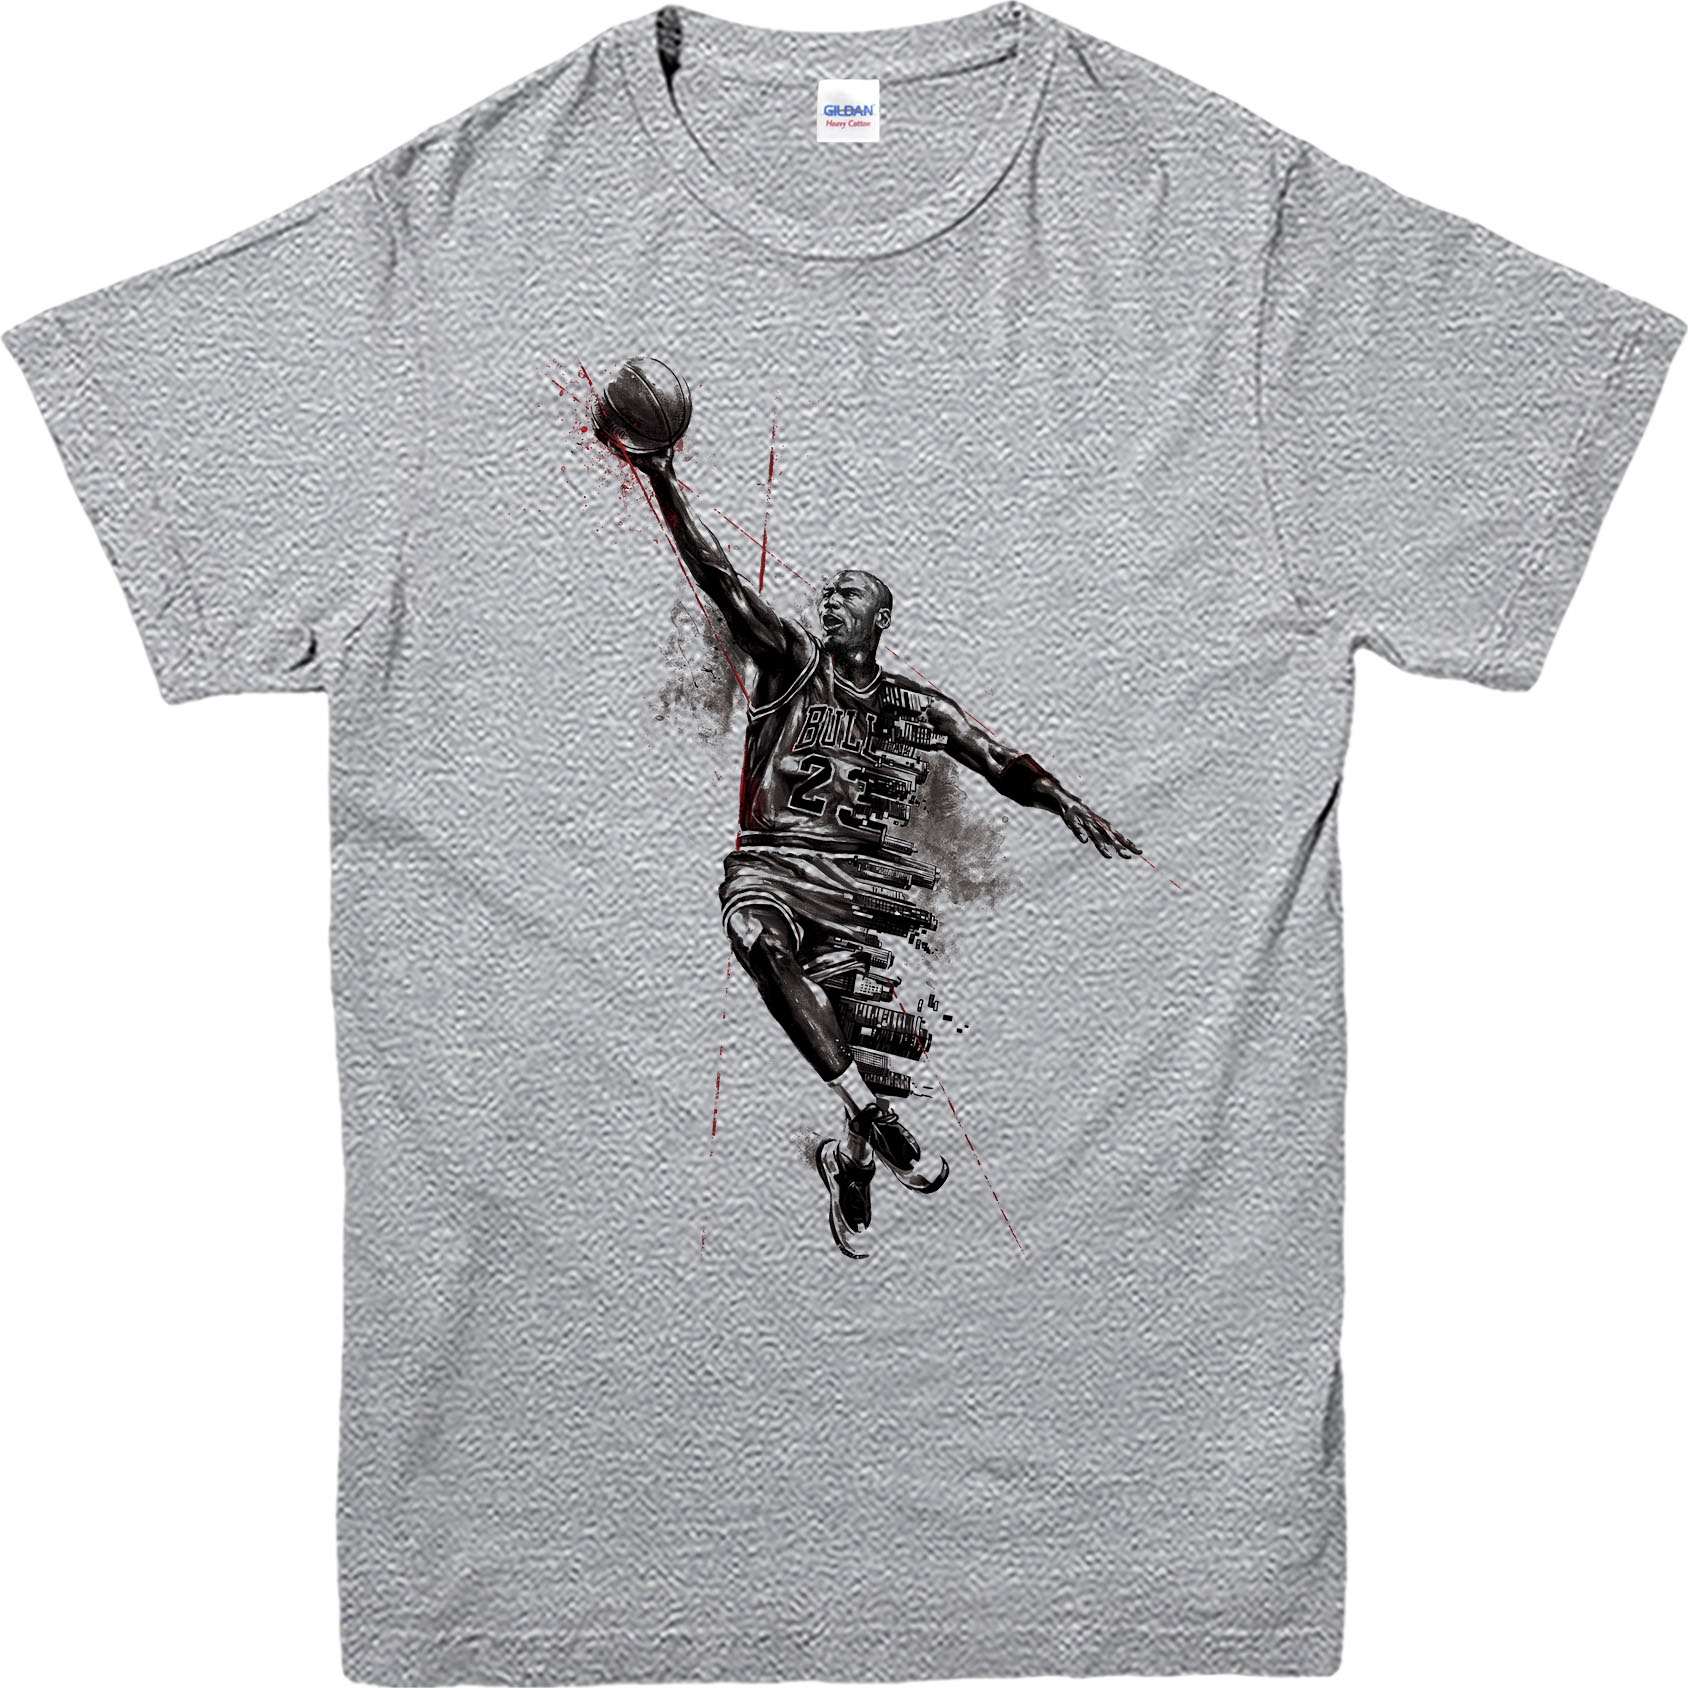 Download Michael Jordan T-Shirt,Basketball Jordan Logo Spoof T ...